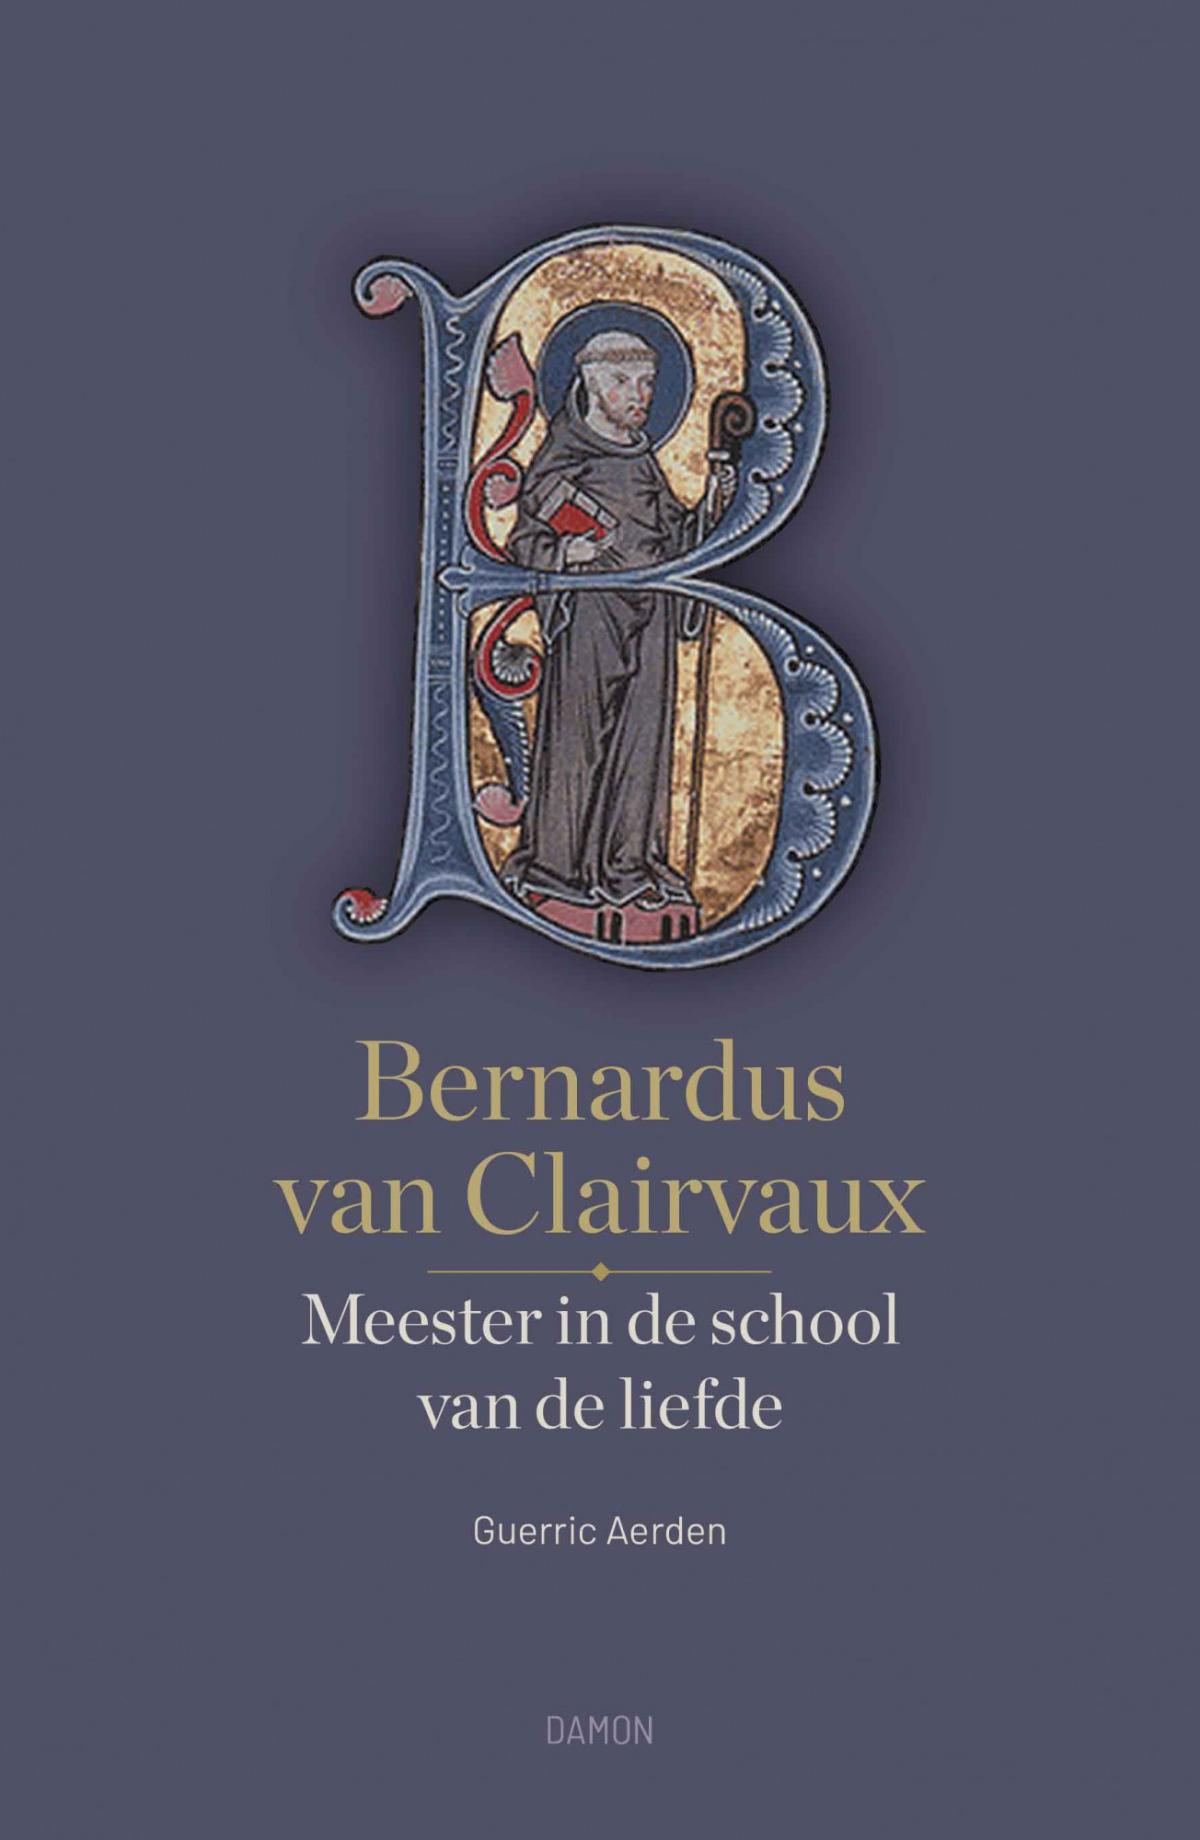 Bernardus van Clairvaux, Meester in de school van de liefde